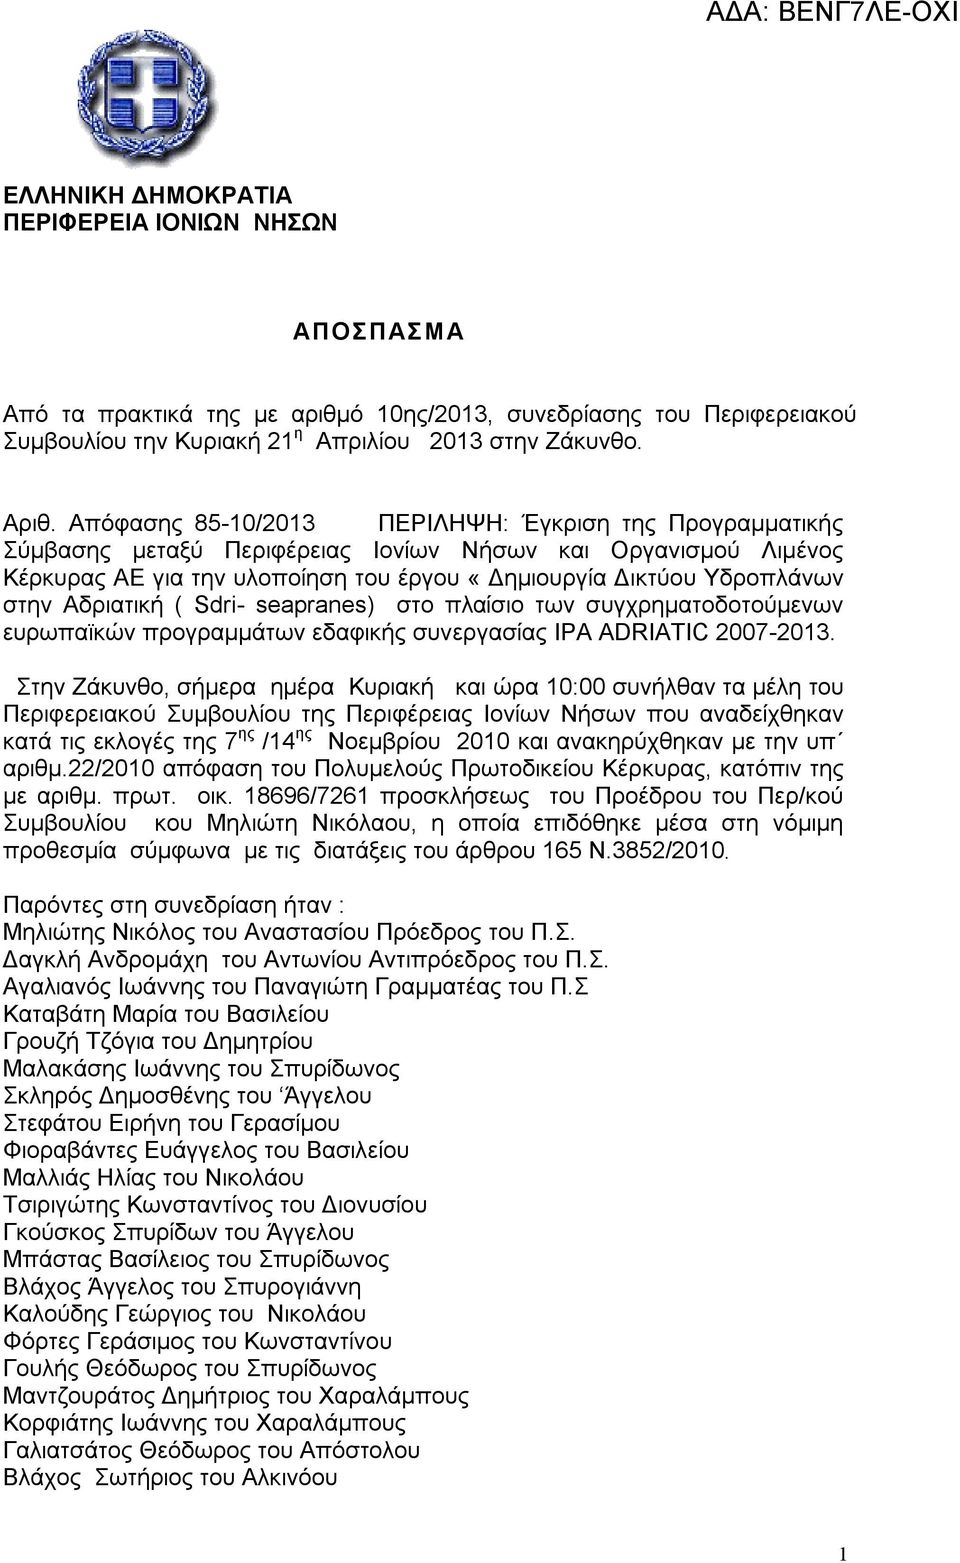 Αδριατική ( Sdri- seapranes) στο πλαίσιο των συγχρηματοδοτούμενων ευρωπαϊκών προγραμμάτων εδαφικής συνεργασίας ΙΡΑ ADRIATIC 2007-2013.